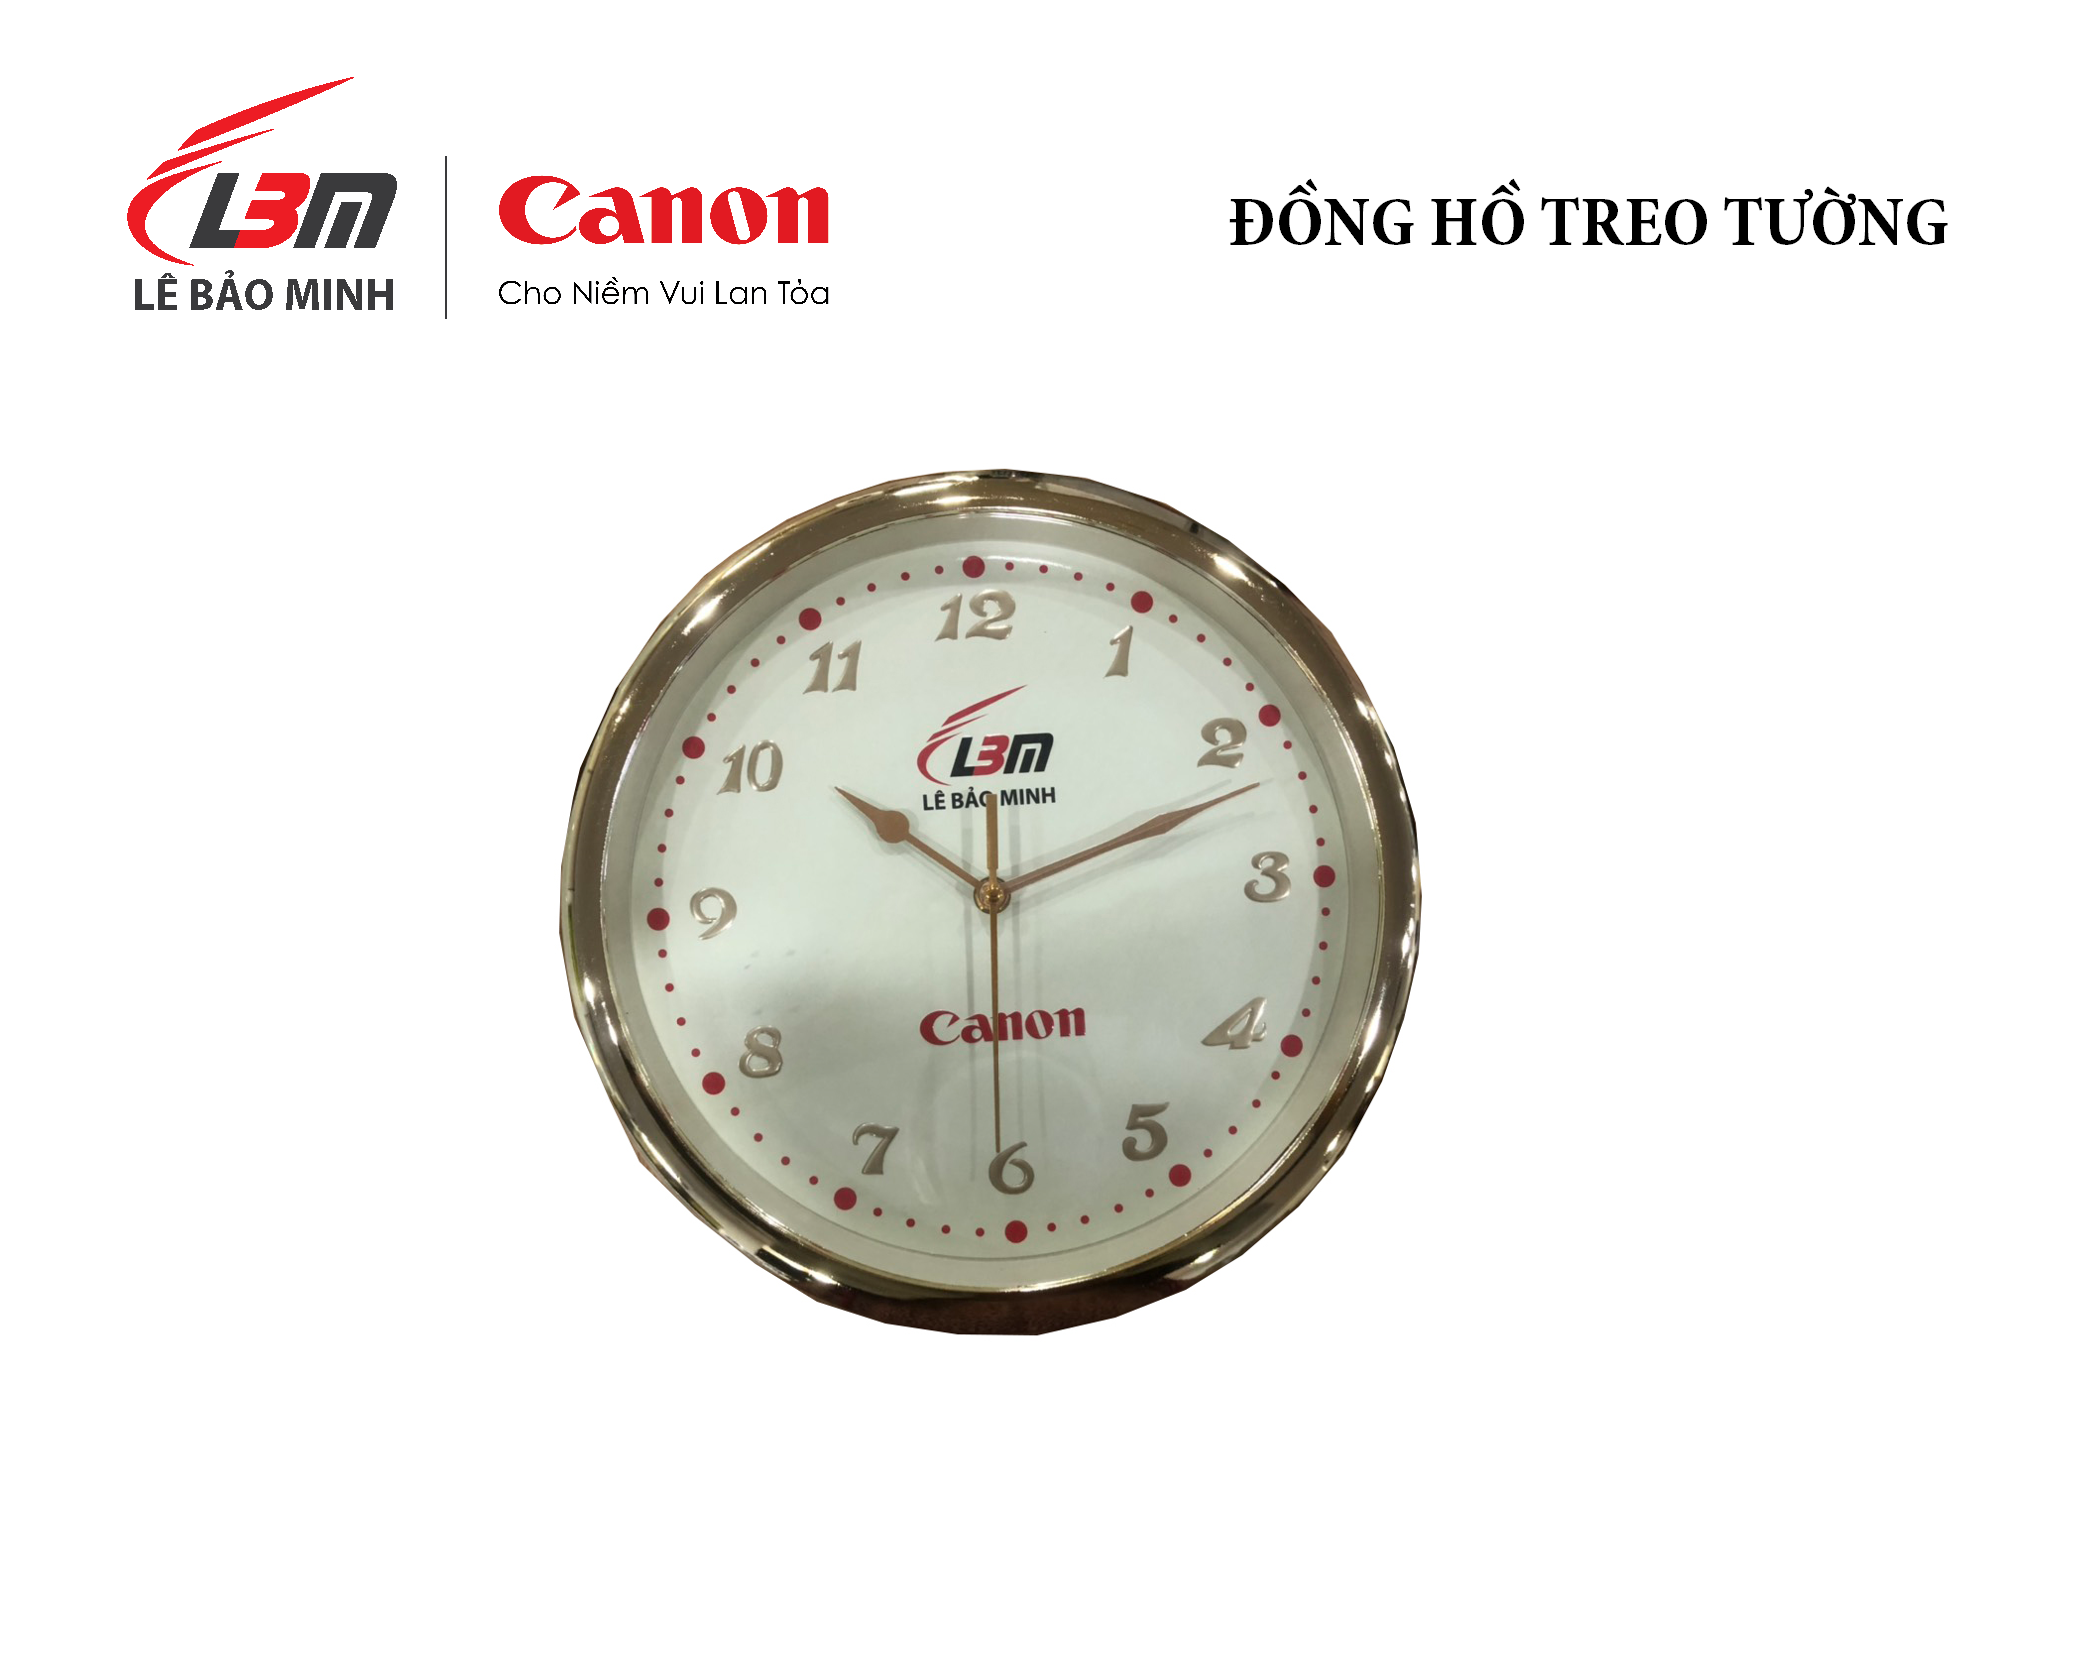 Đồng hồ treo tường Canon - Lê Bảo Minh